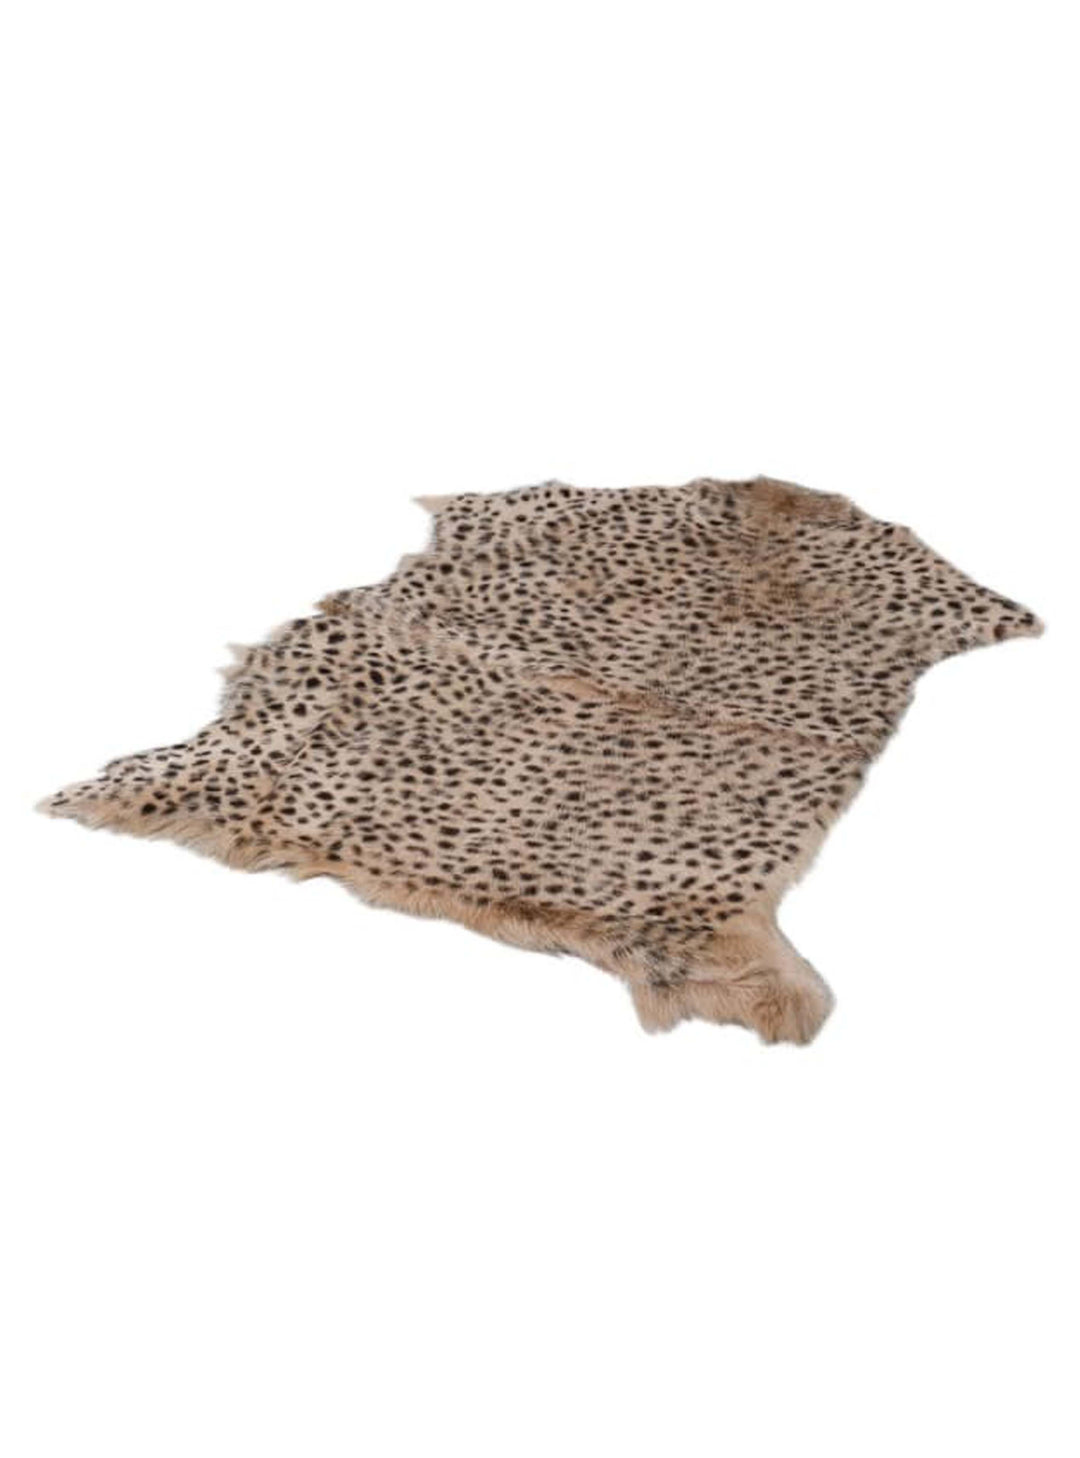 Leopard Print Goat Fur Rug, Leopard rug, tiger rug